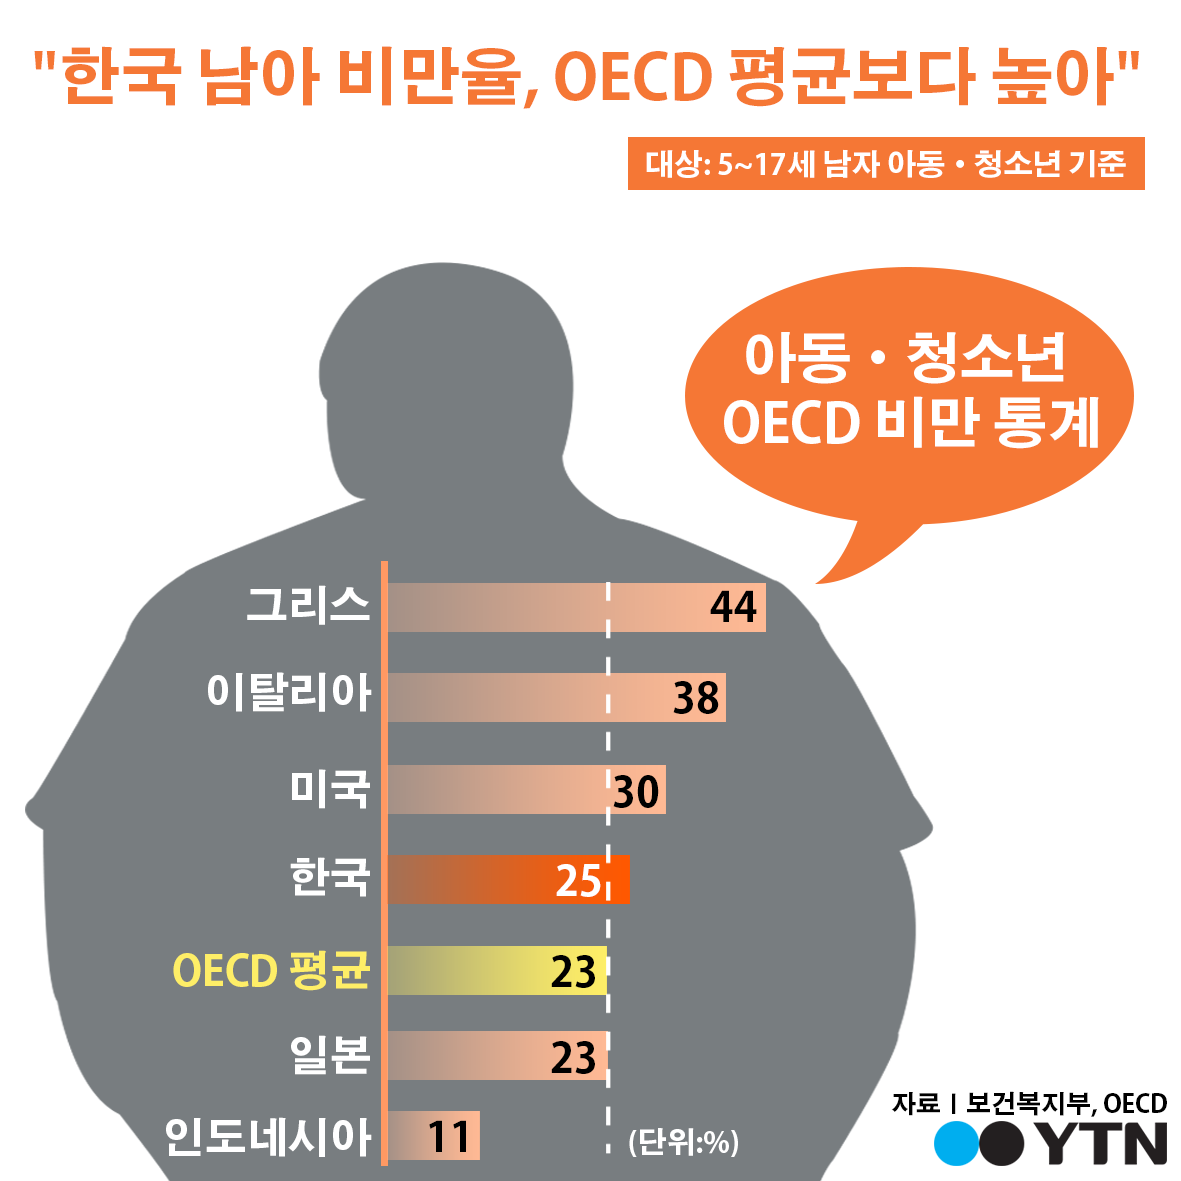 [한컷뉴스] "한국 남아 비만율 25%…OECD 평균보다 높아"